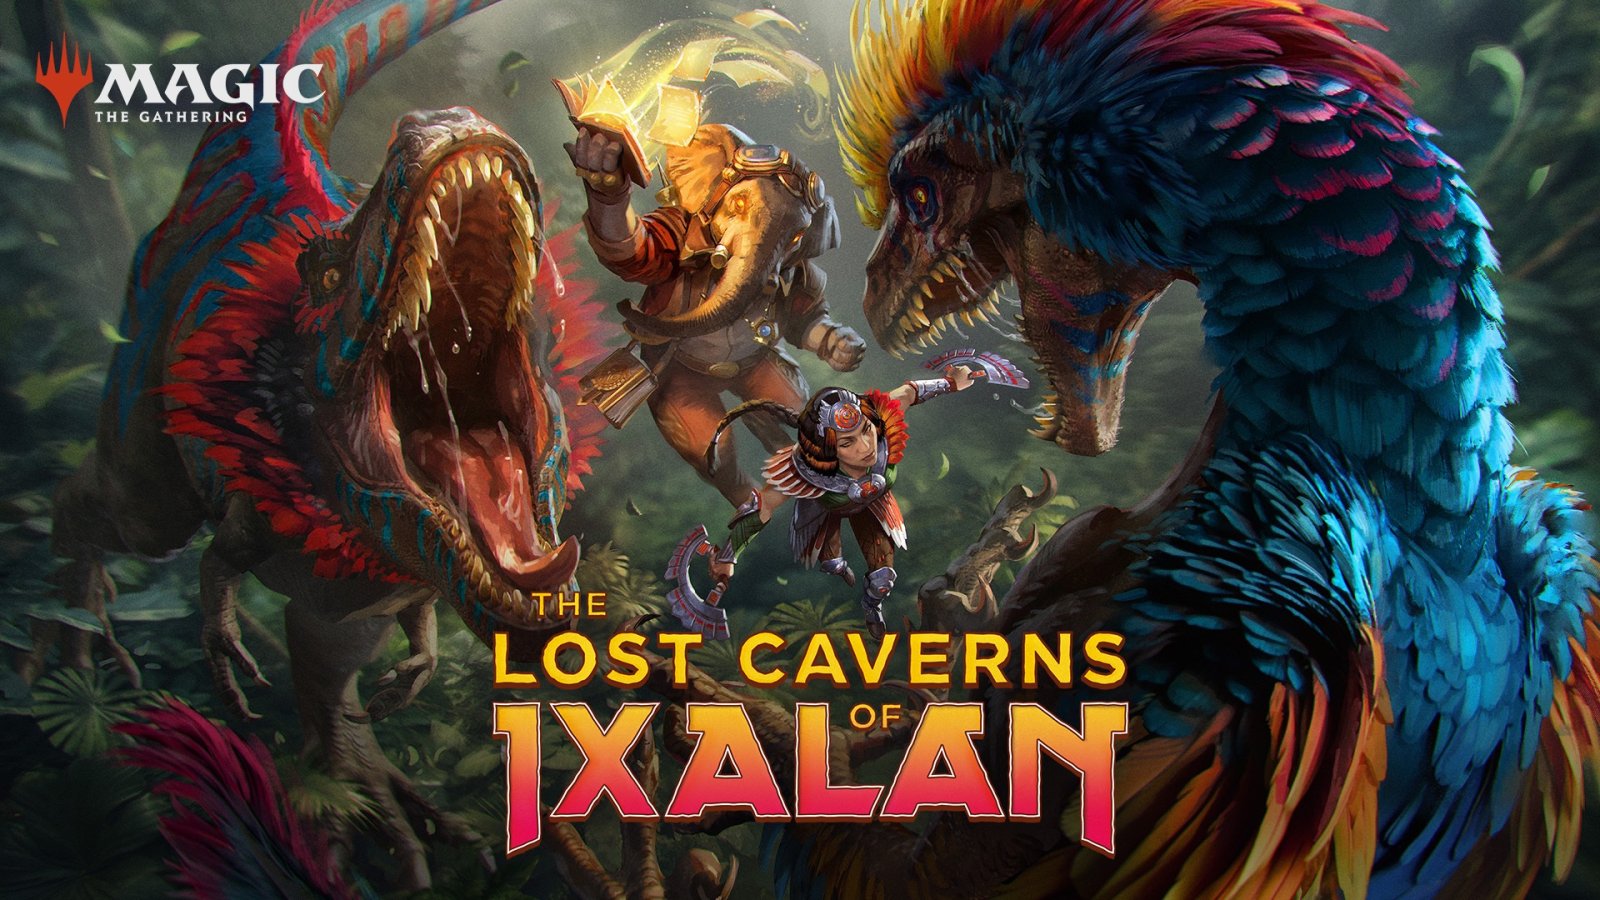 ลึกลงไปใต้โลกเพื่อค้นหาขุมพลังโบราณใน Magic: The Gathering ชุดใหม่ “The Lost Caverns of Ixalan”